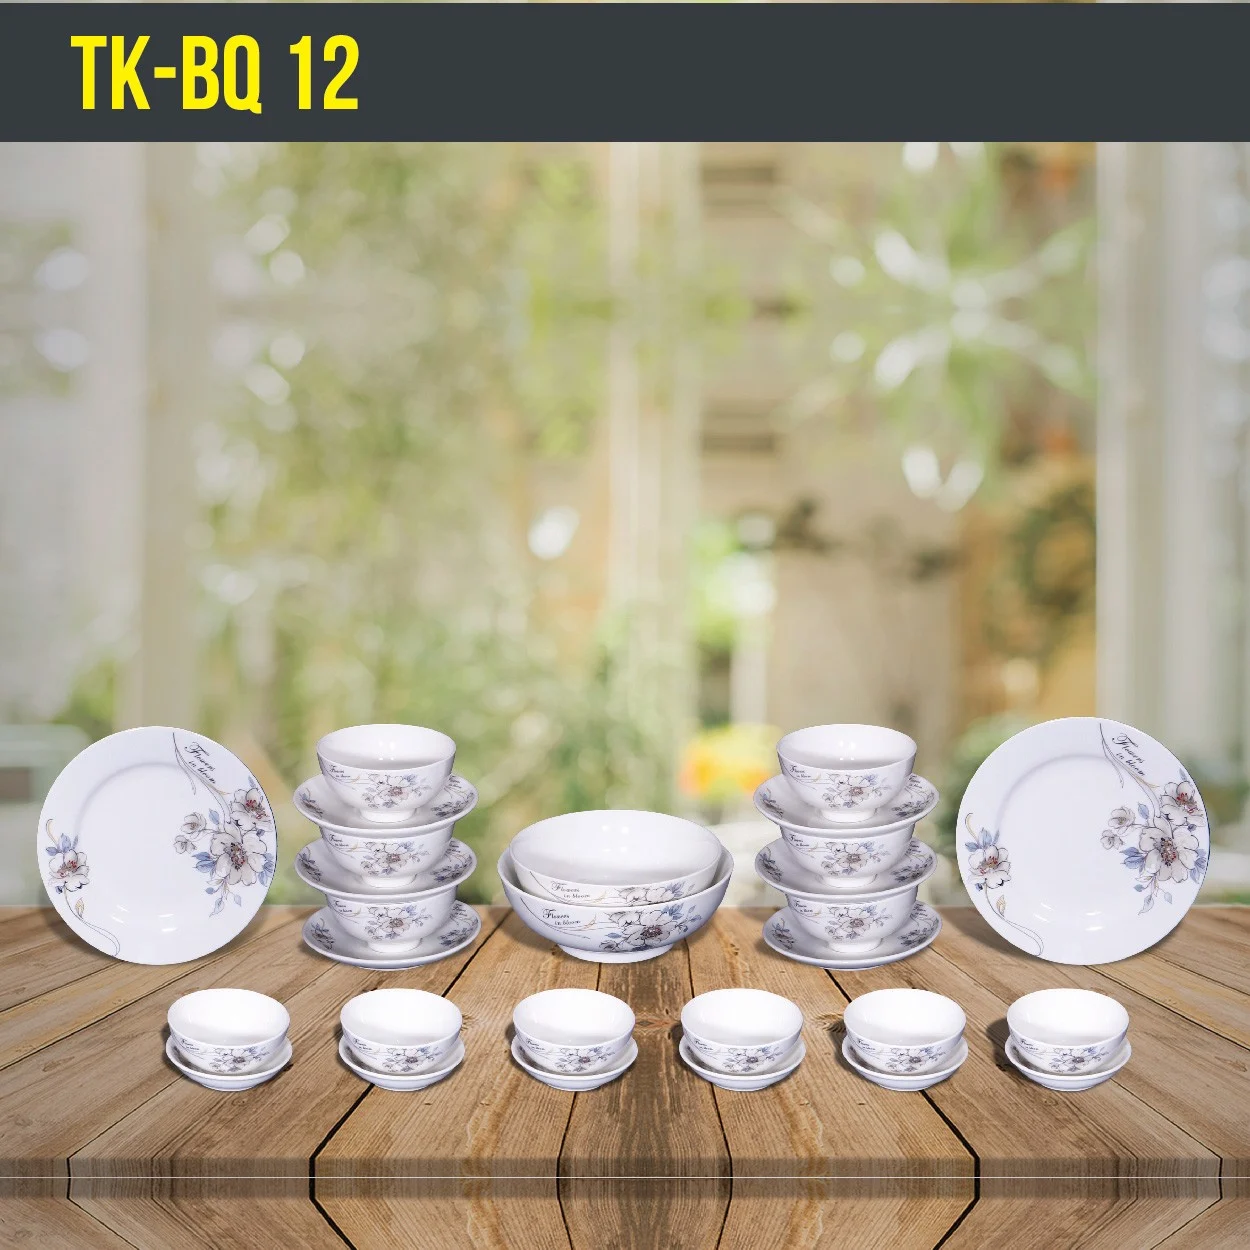 Bát sứ quà tặng giá rẻ Trung Kiên bộ 12 sản phẩm TK-BQ12